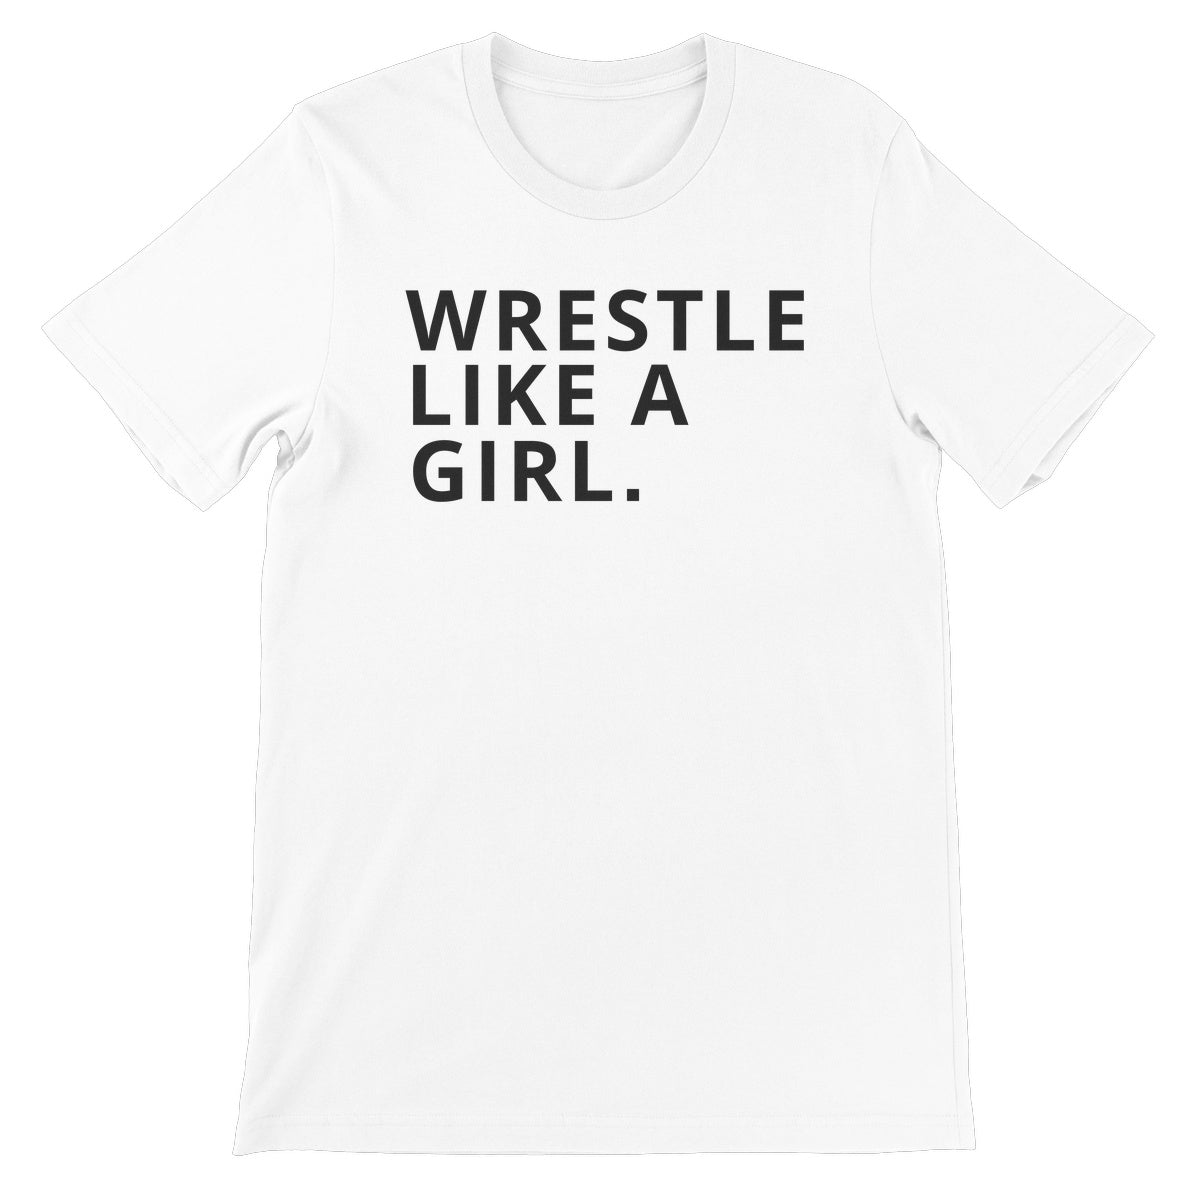 Let's Wrestle ...Like A Girl Unisex Short Sleeve T-Shirt